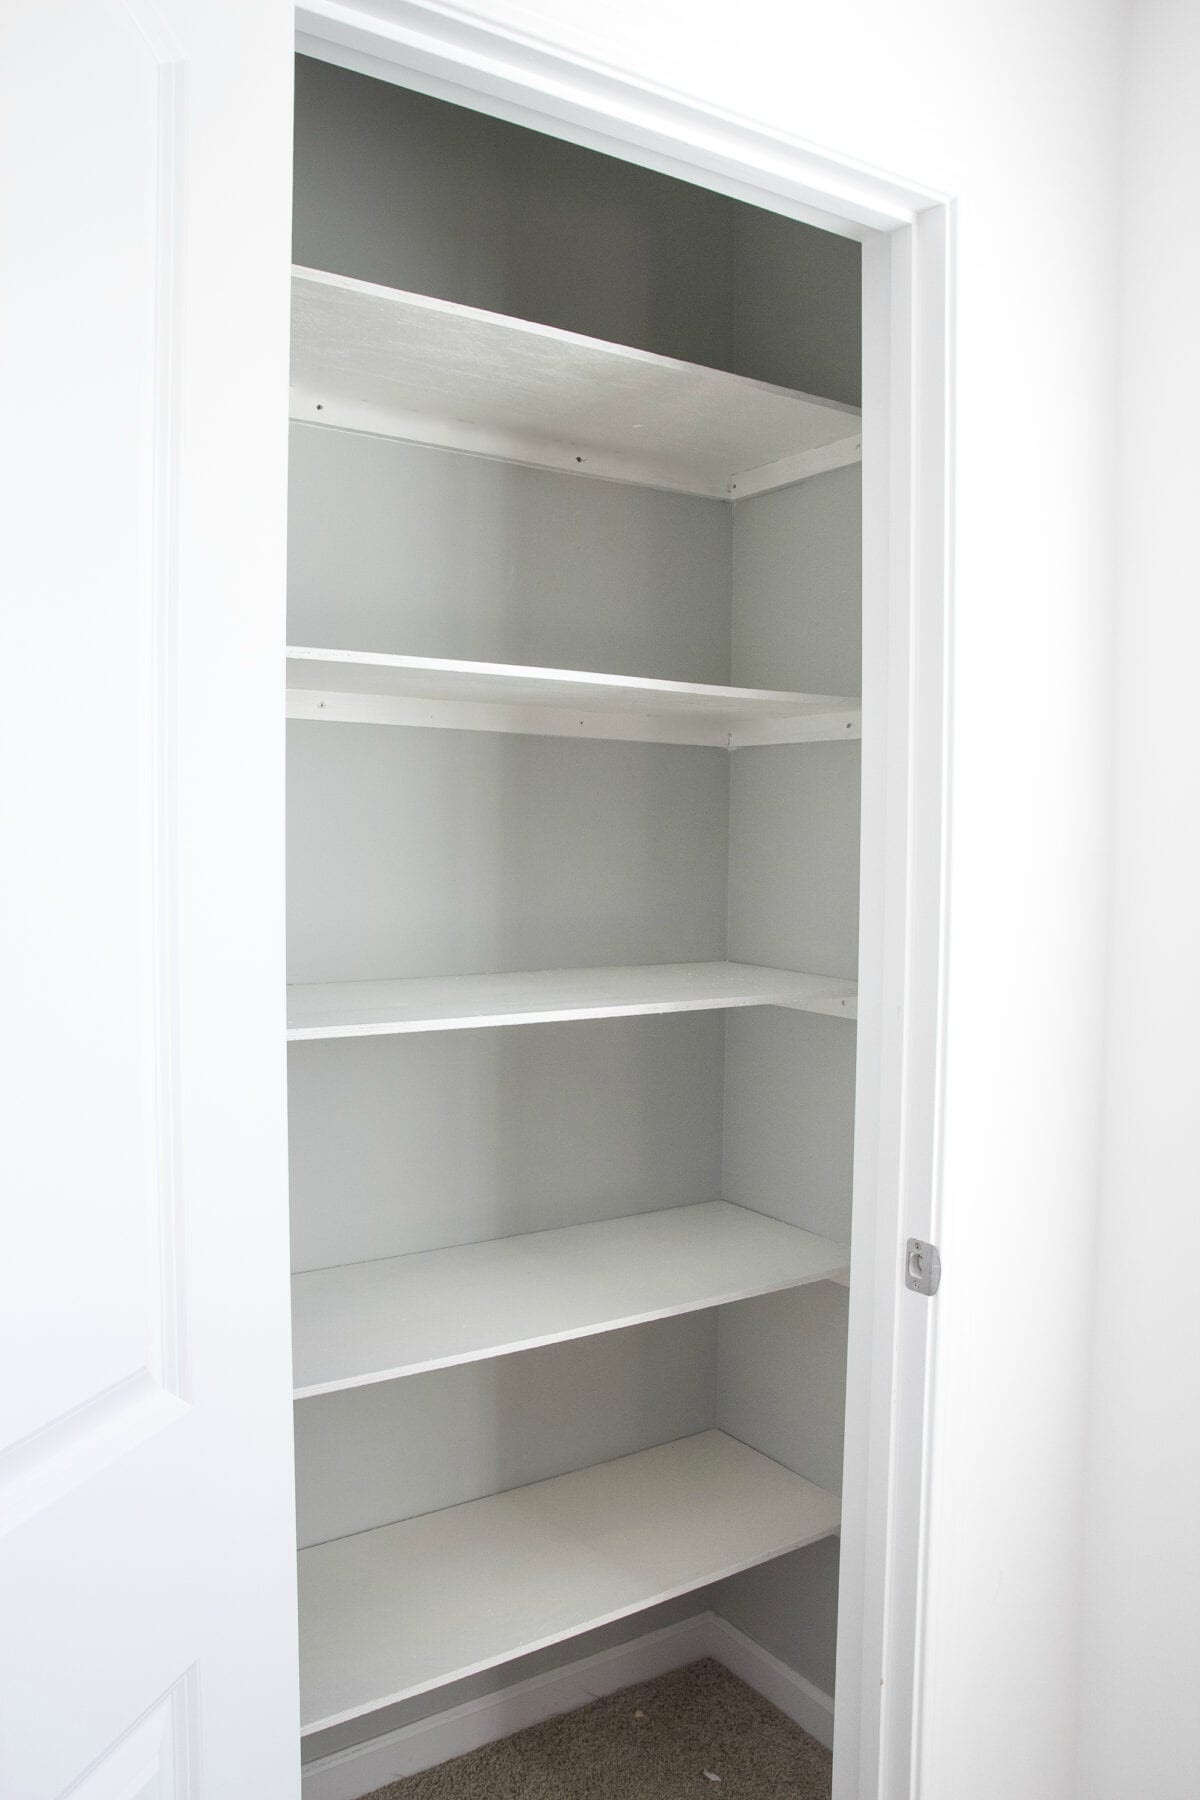 DIY Closet Shelves Plans
 Basic DIY Closet Shelving